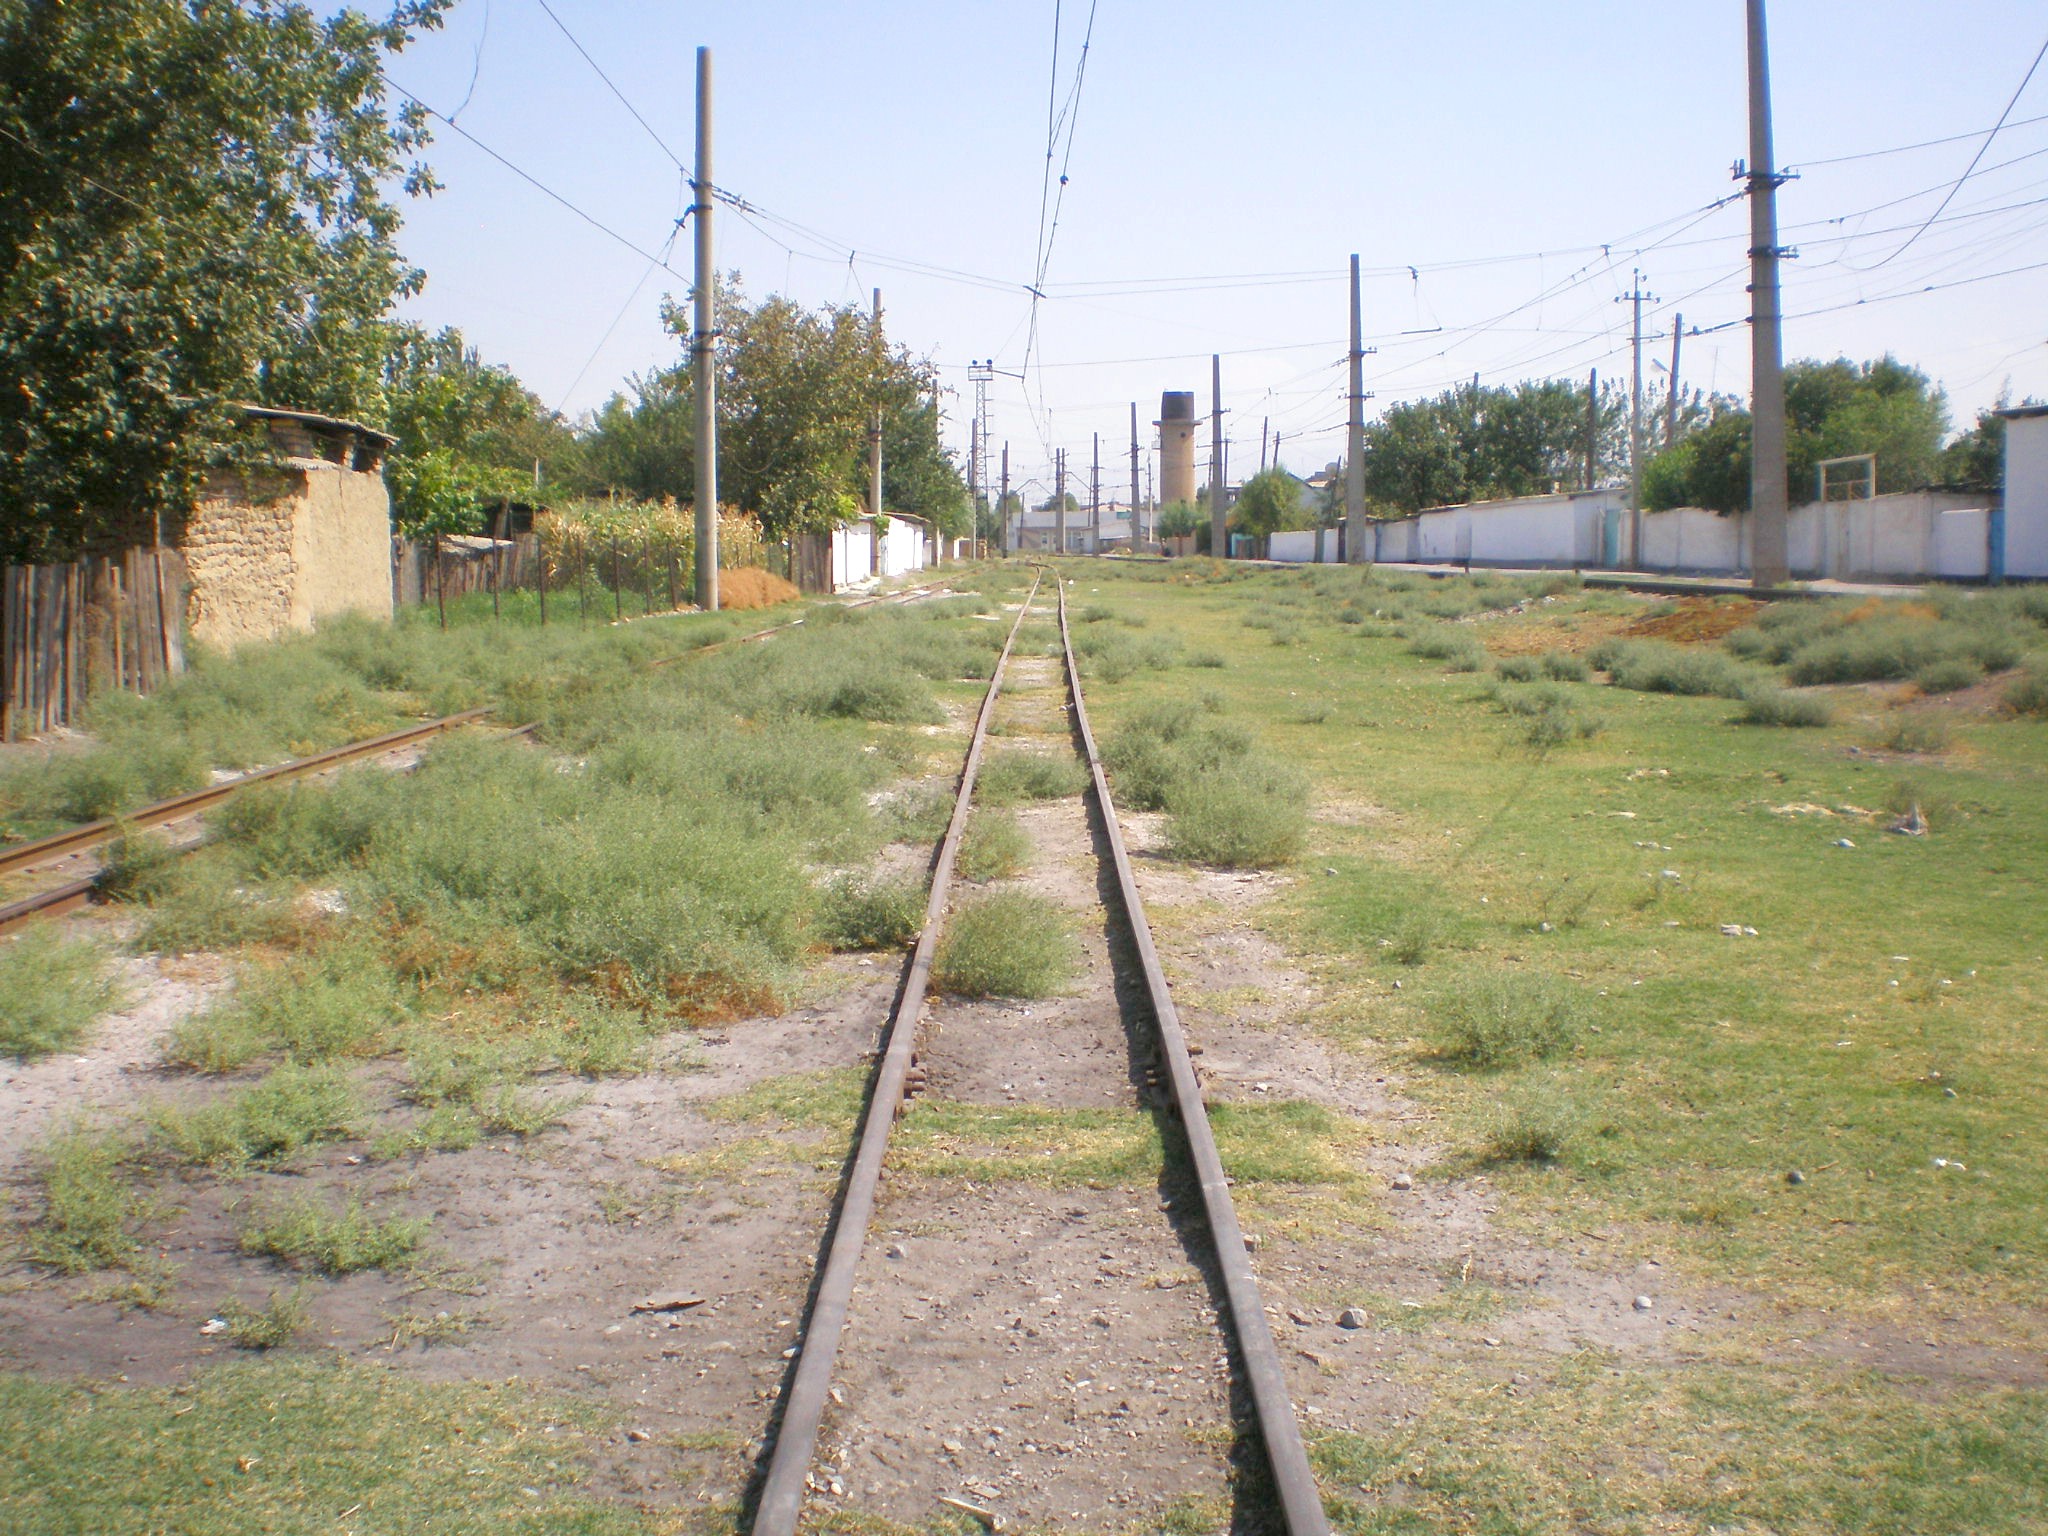 Сулюктинская узкоколейная железная дорога  —  фотографии, сделанные в 2008 году (часть 16)